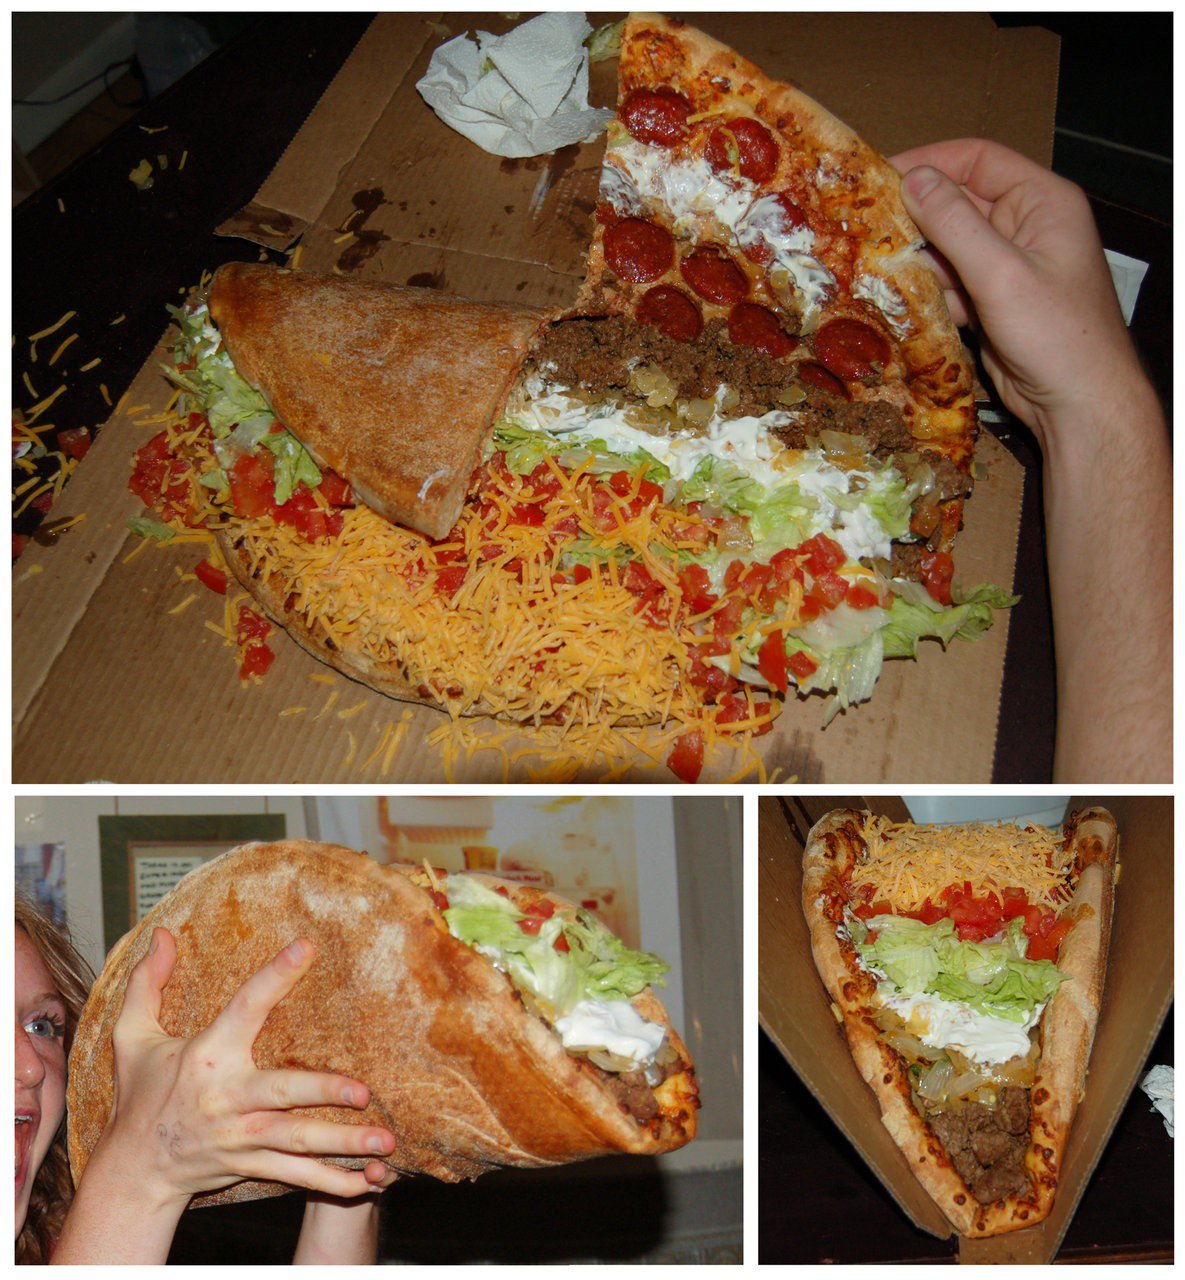 This taco looks bomb!